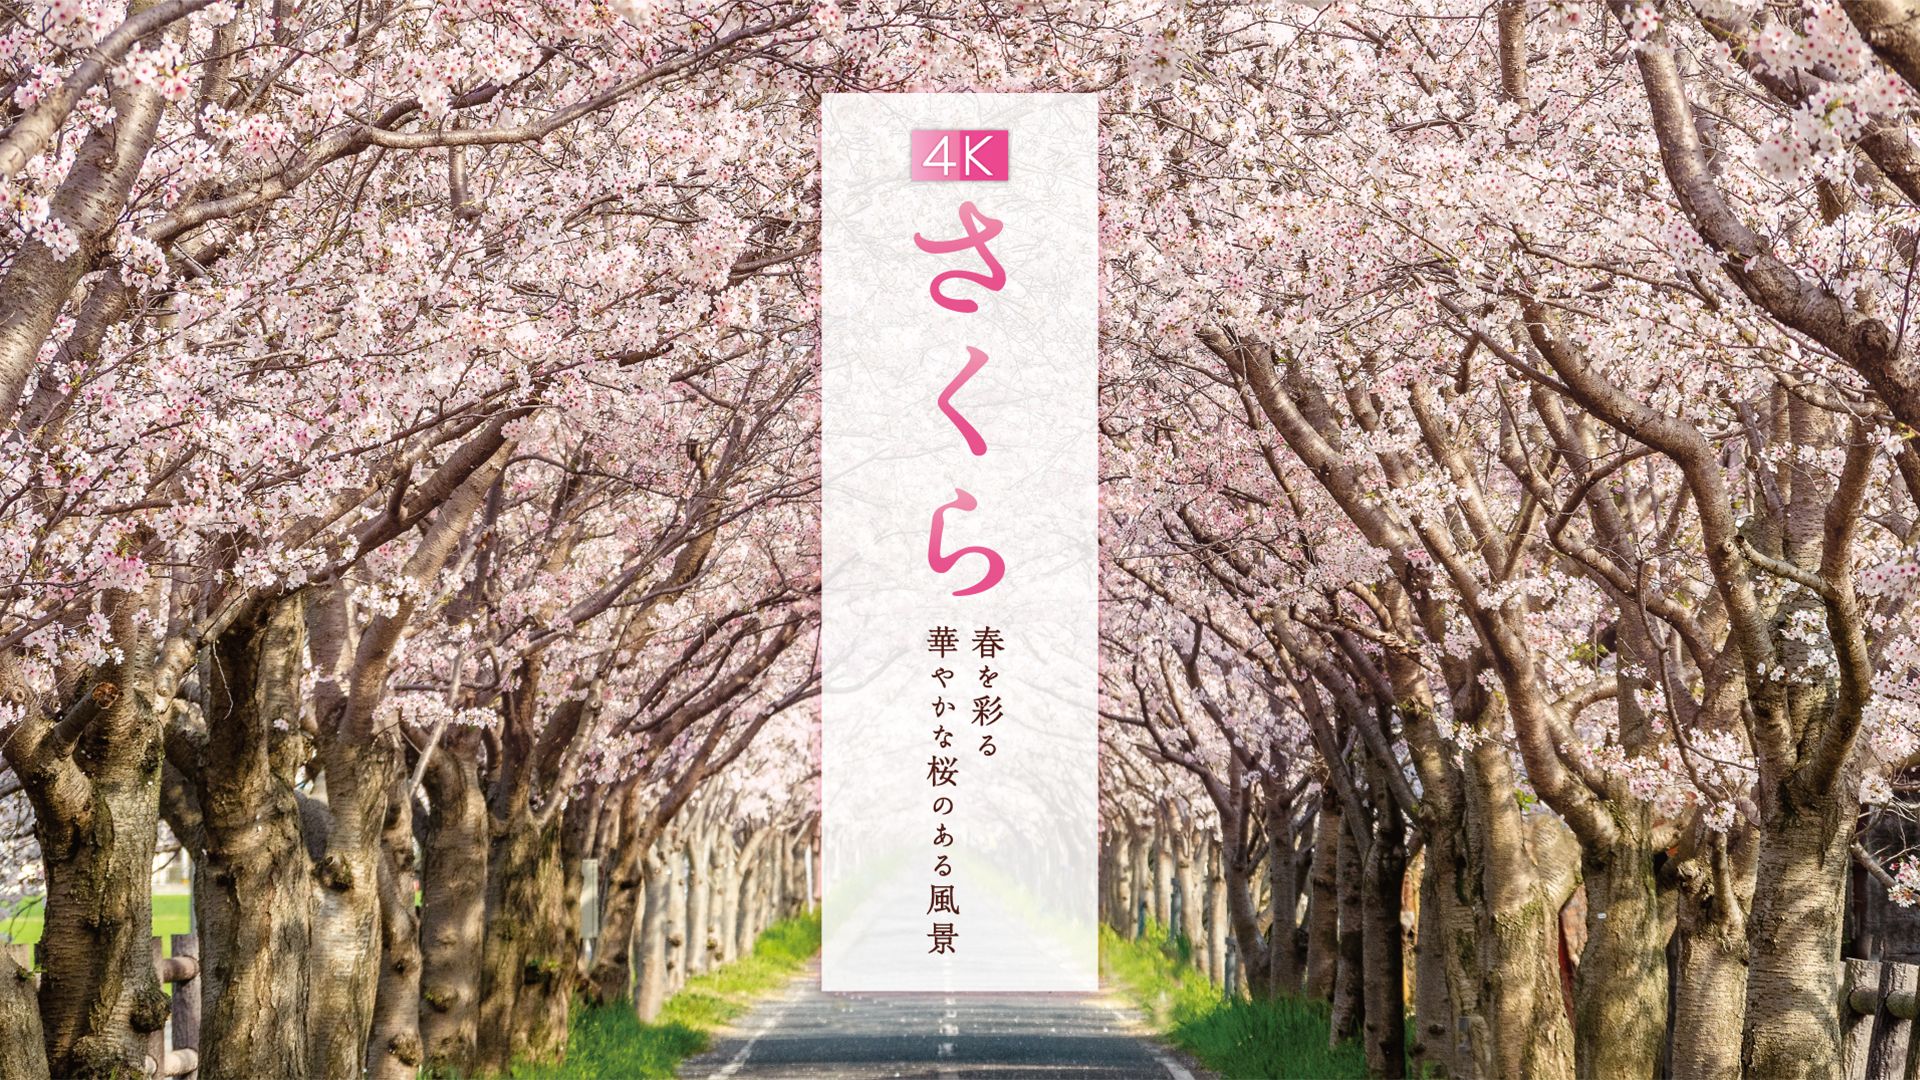 4Kさくら 春を彩る華やかな桜のある風景【4K･HDR】